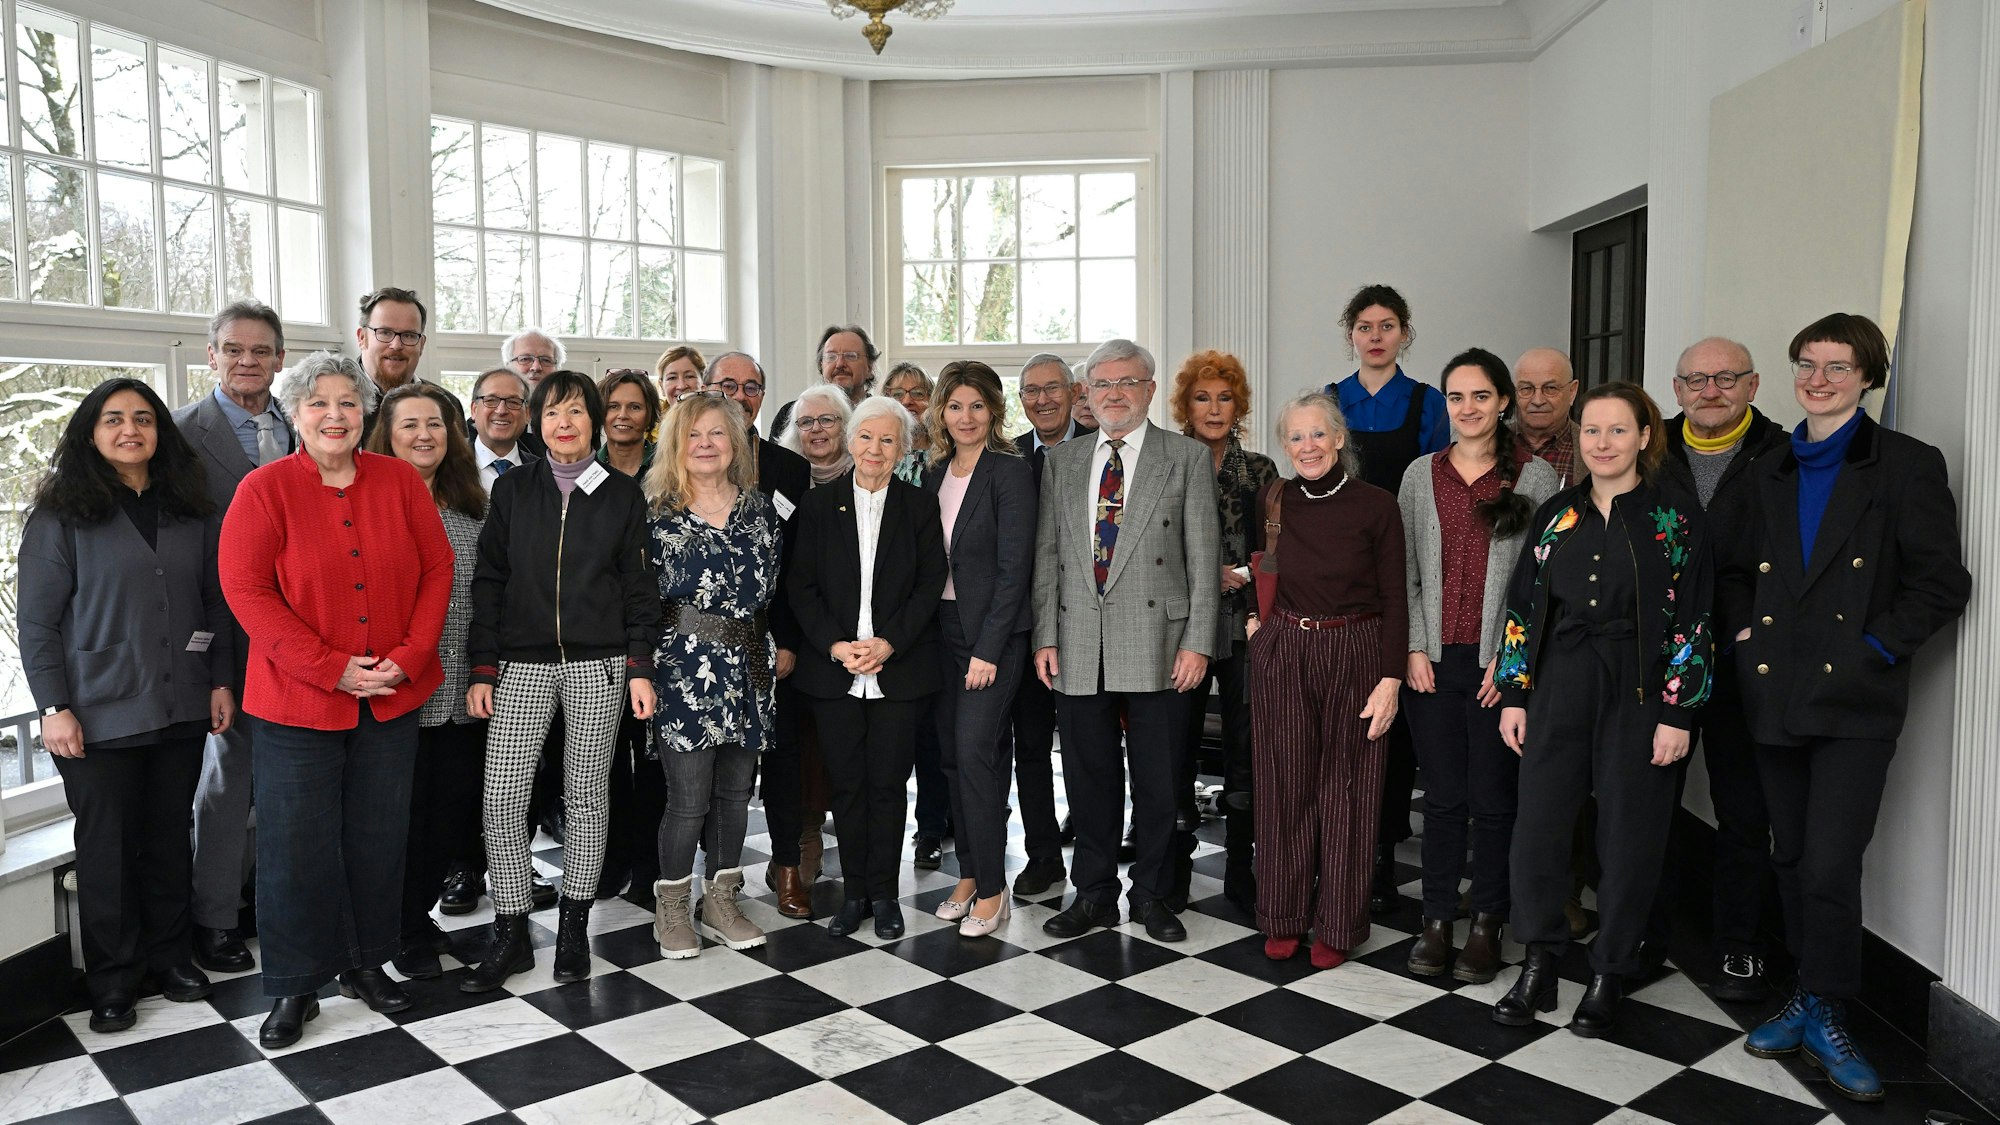 Vorstandsmitglieder der Gruppe 48, darunter die neue Vorsitzende Fatmanur Kalkan (l.), Sponsoren, Gäste aus der Politik und ausgezeichnete Autorinnen und Autoren stellten sich in Schloss Eulenbroich in Rösrath zum Gruppenfoto auf.